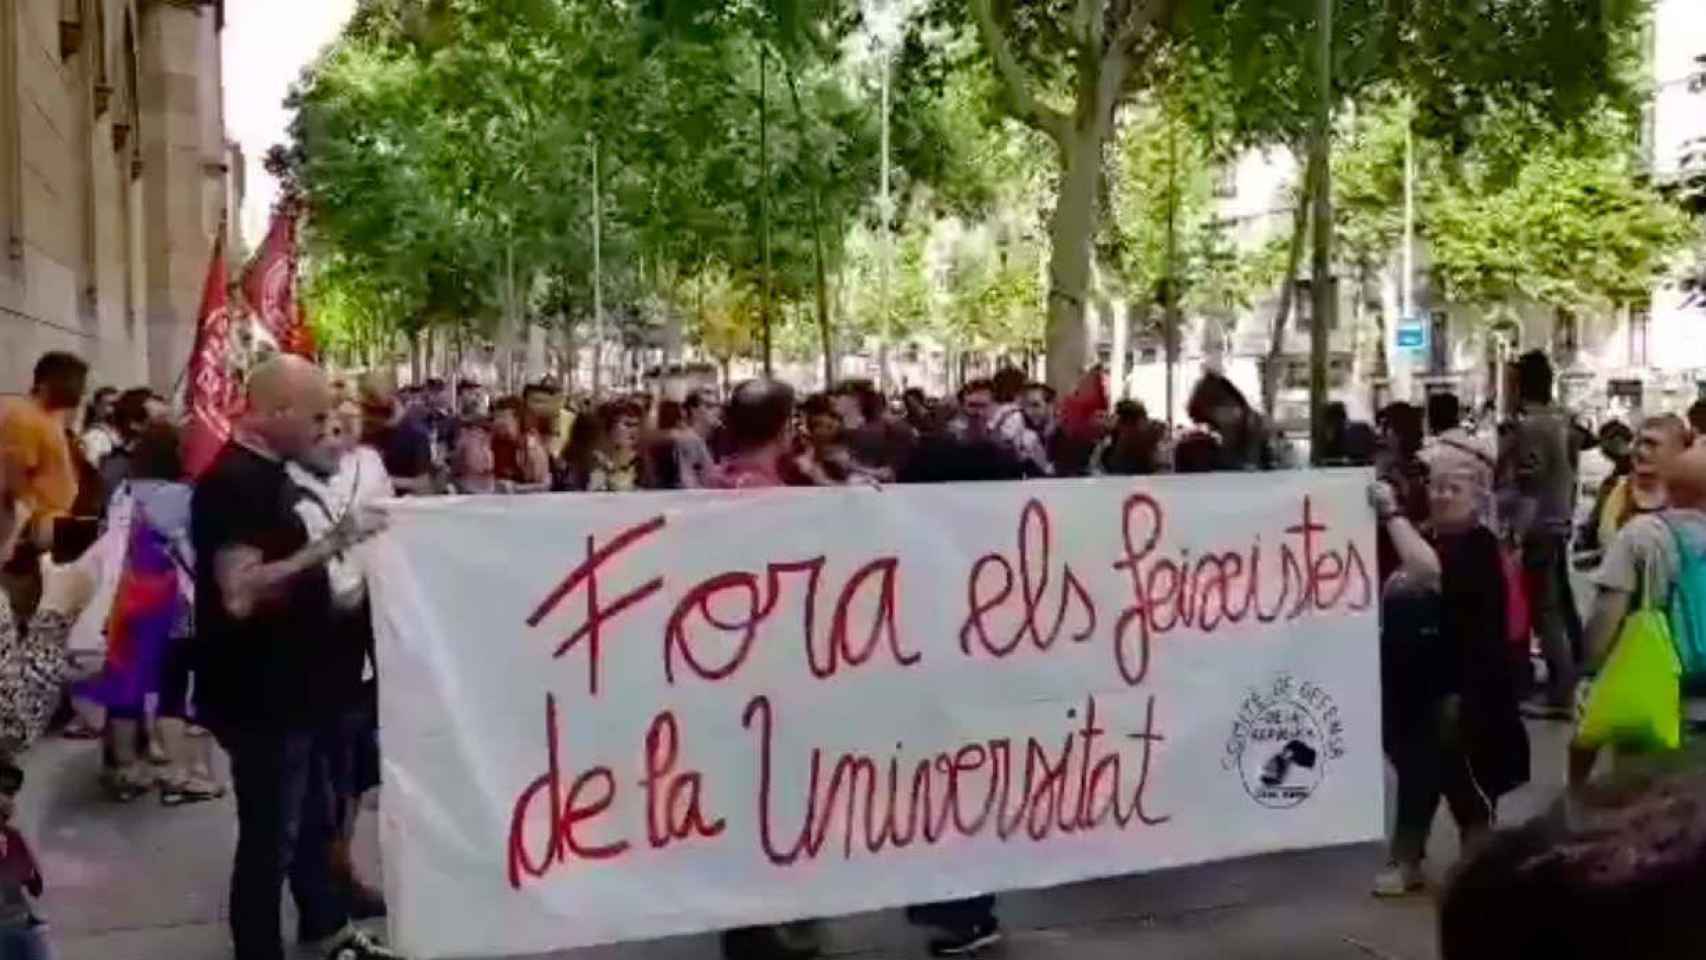 Imagen del boicot de independentistas radicales contra un acto de homenaje a Cervantes en la Universidad de Barcelona (UB) / CG